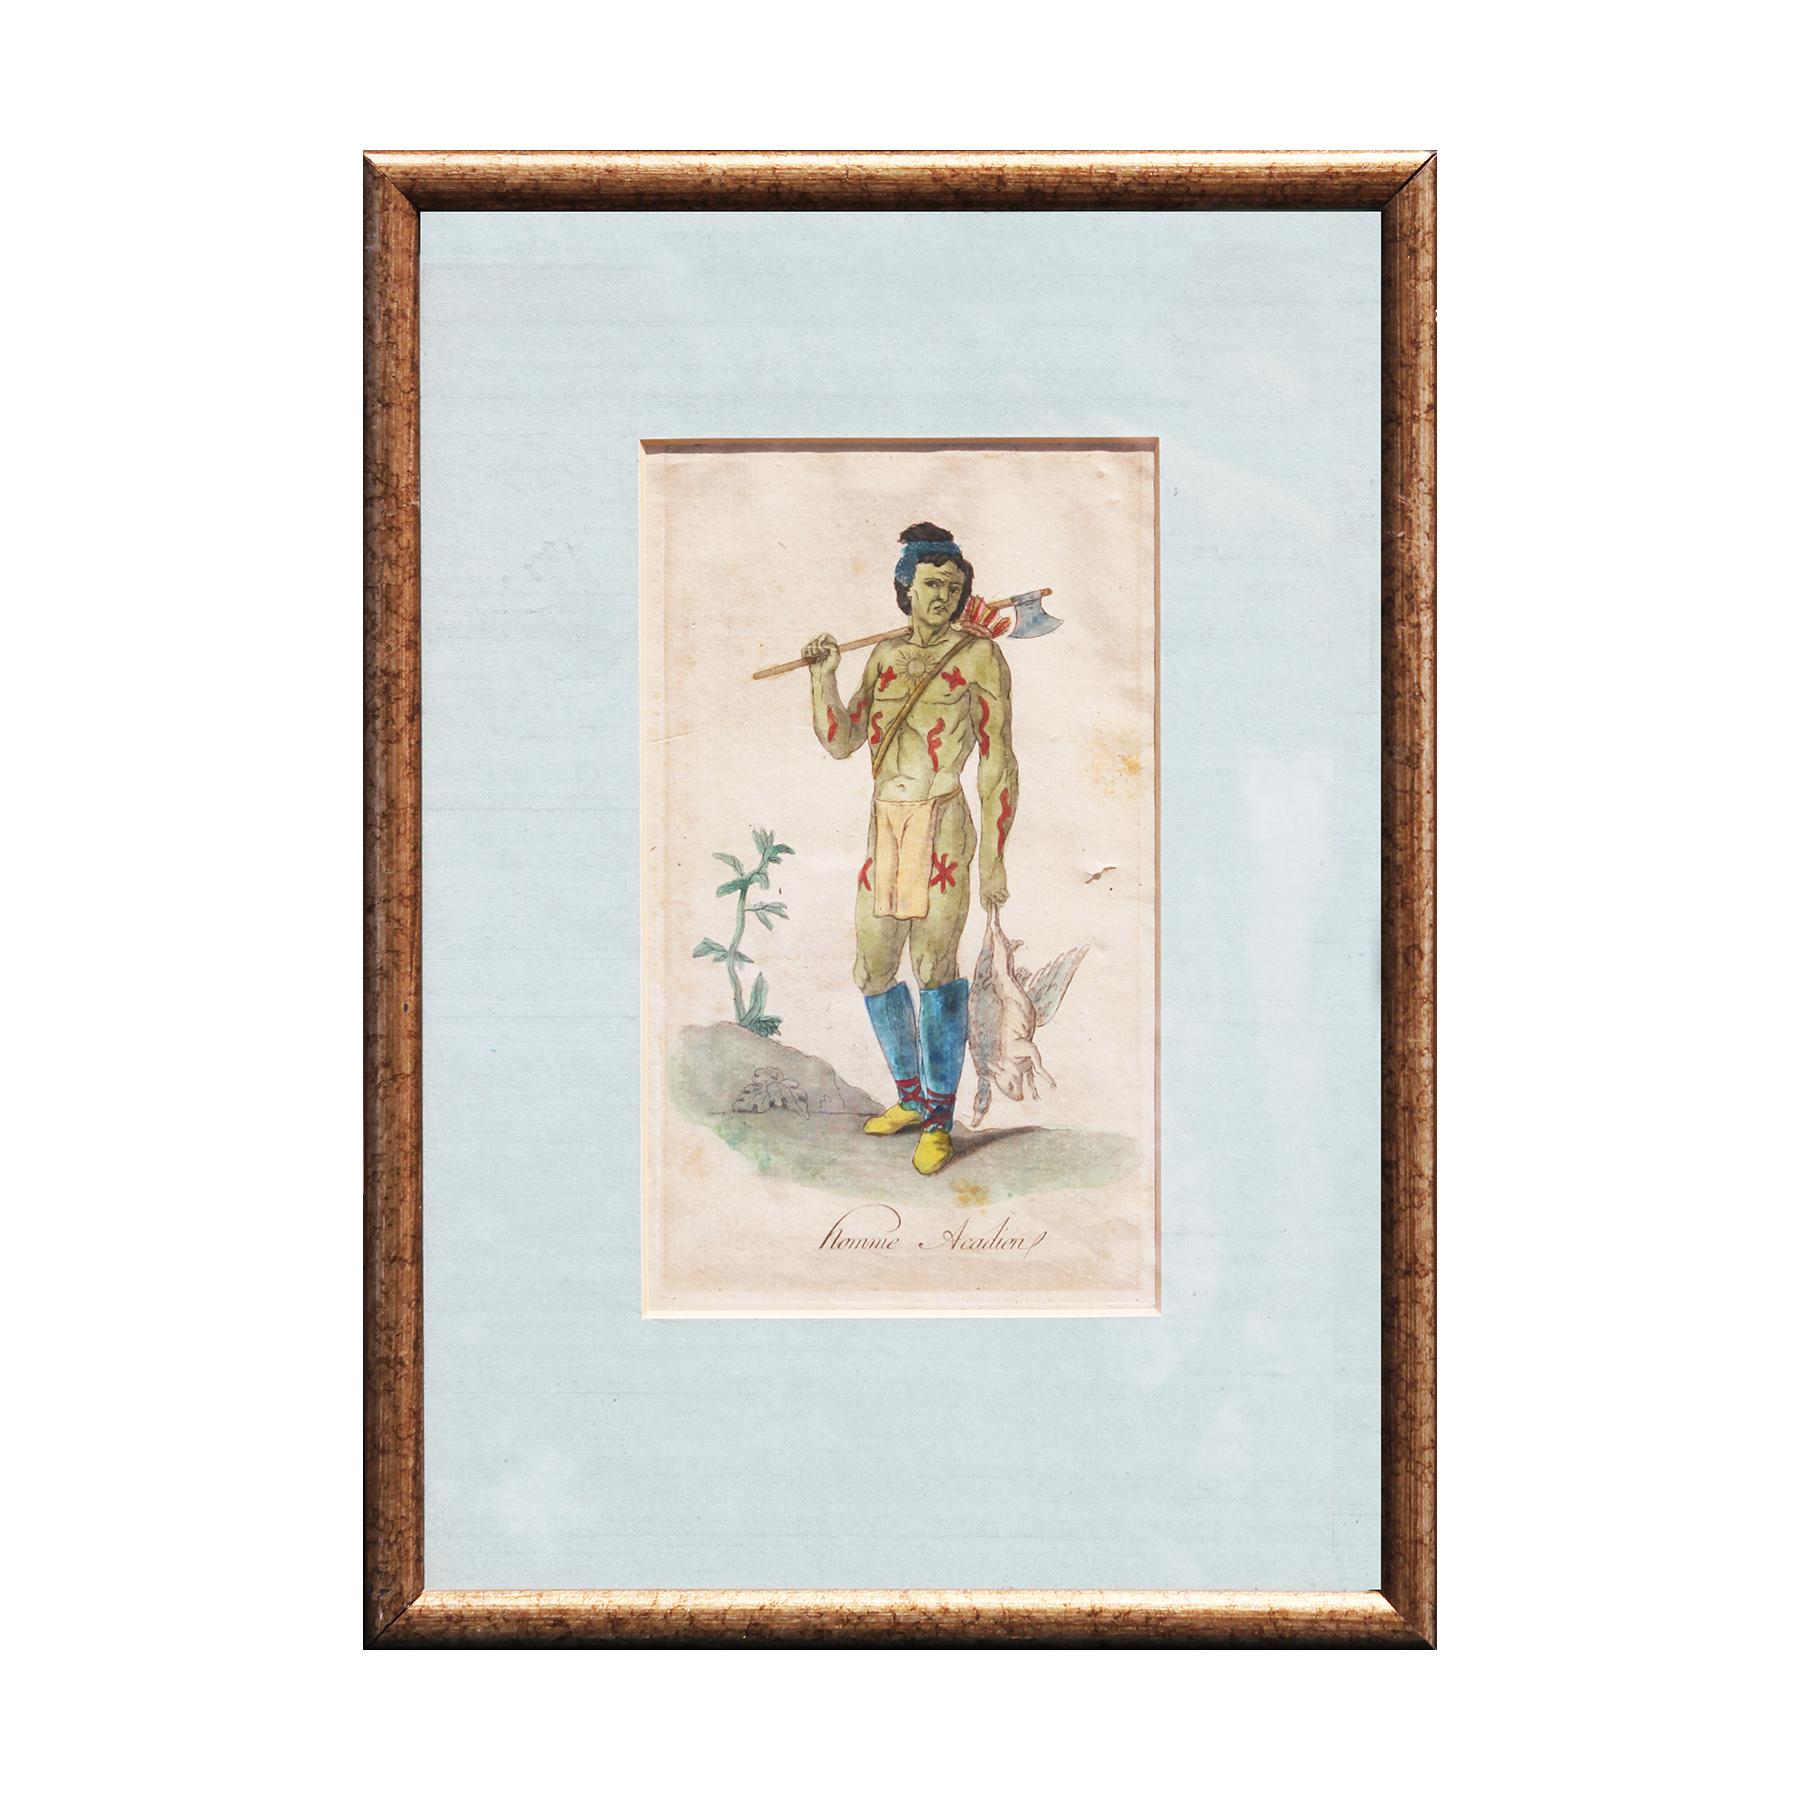 Jacques Grasset de Saint-Sauveur Portrait Print - "Homme Acadien" Hand Tinted Engraving from Costumes de Différents Pays Series 